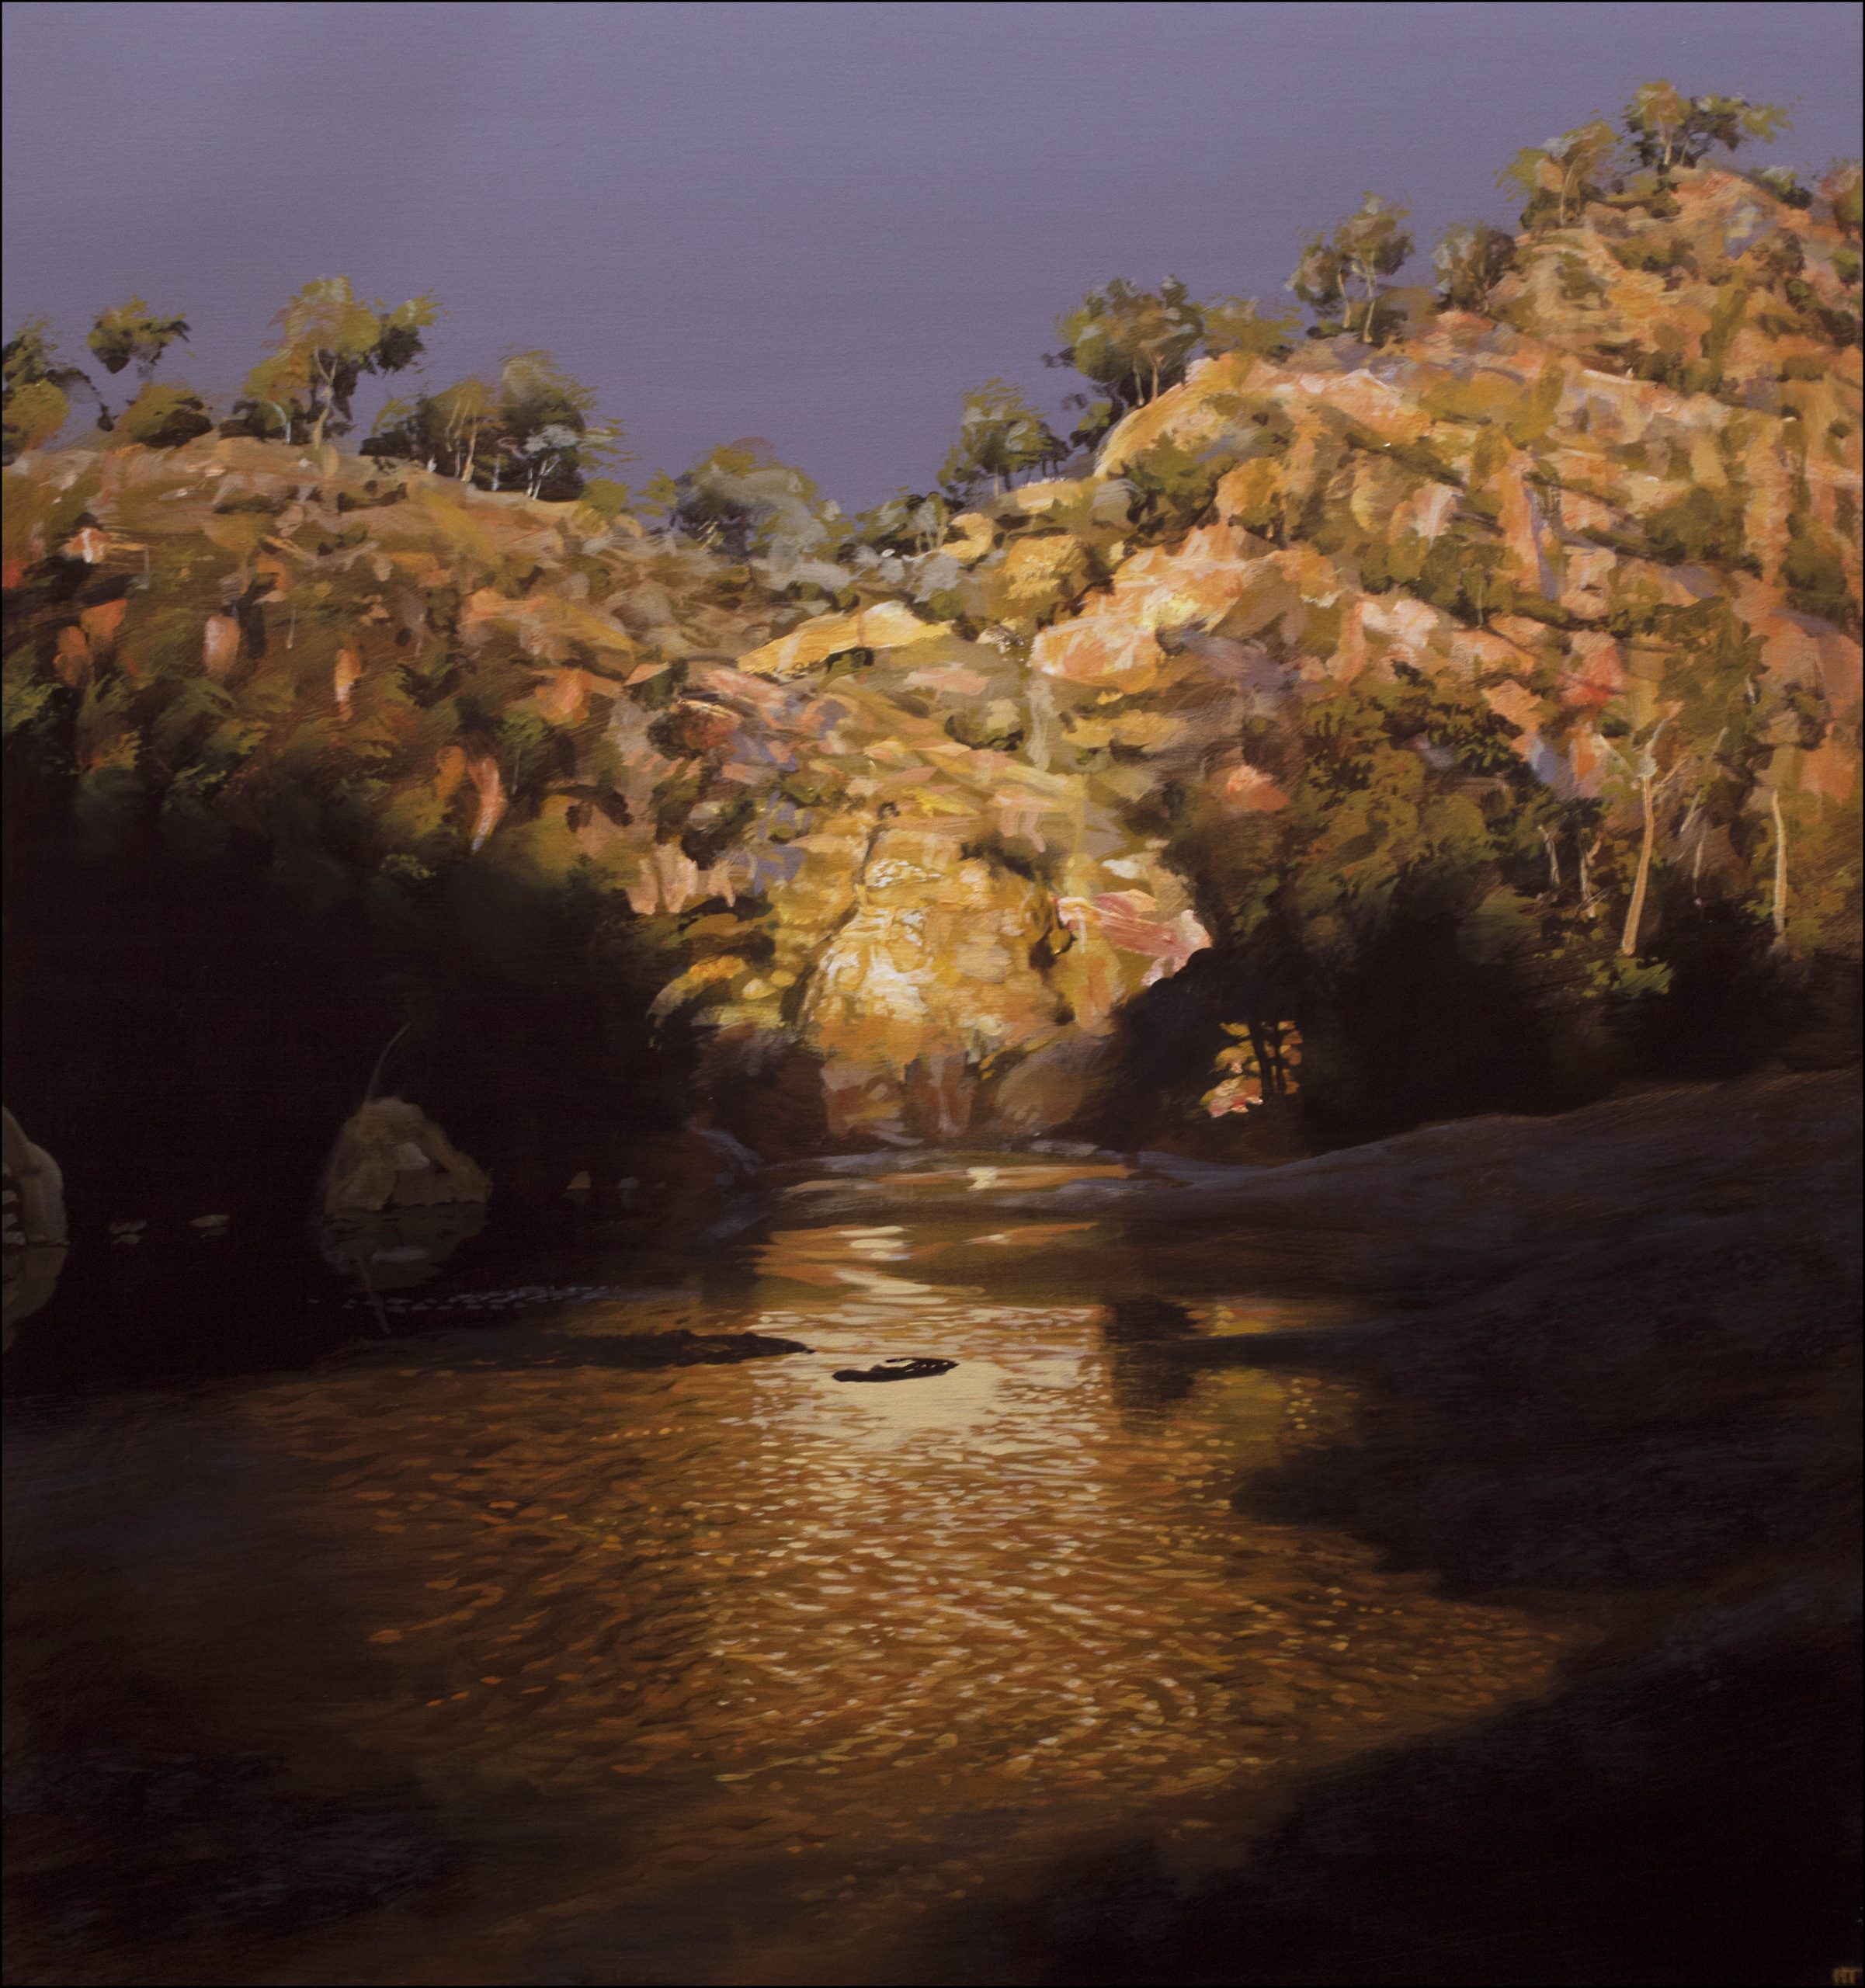 Neil Taylor 'Dawn On The Turon' acrylic on canvas 76 x 81cm $6,000